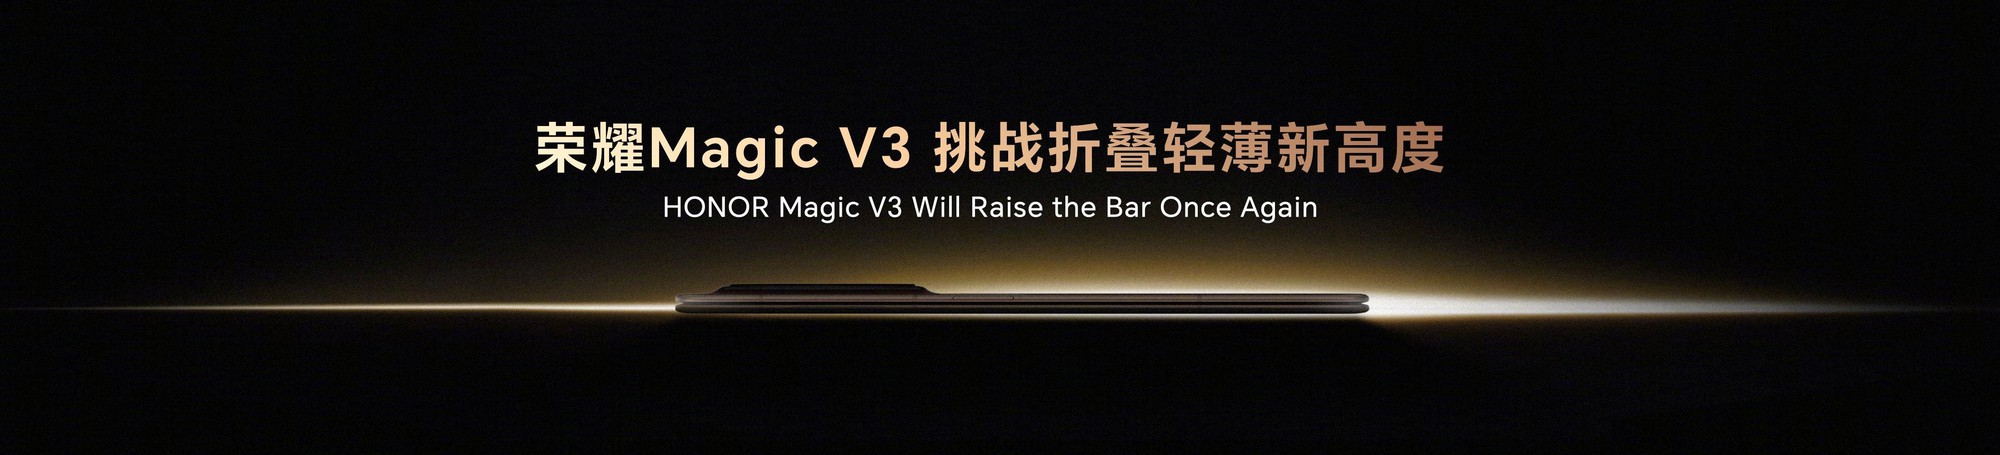 Smartphone màn hình có thể gập Honor Magic V3 có thể phá vỡ kỷ lục về độ mỏng- Ảnh 2.